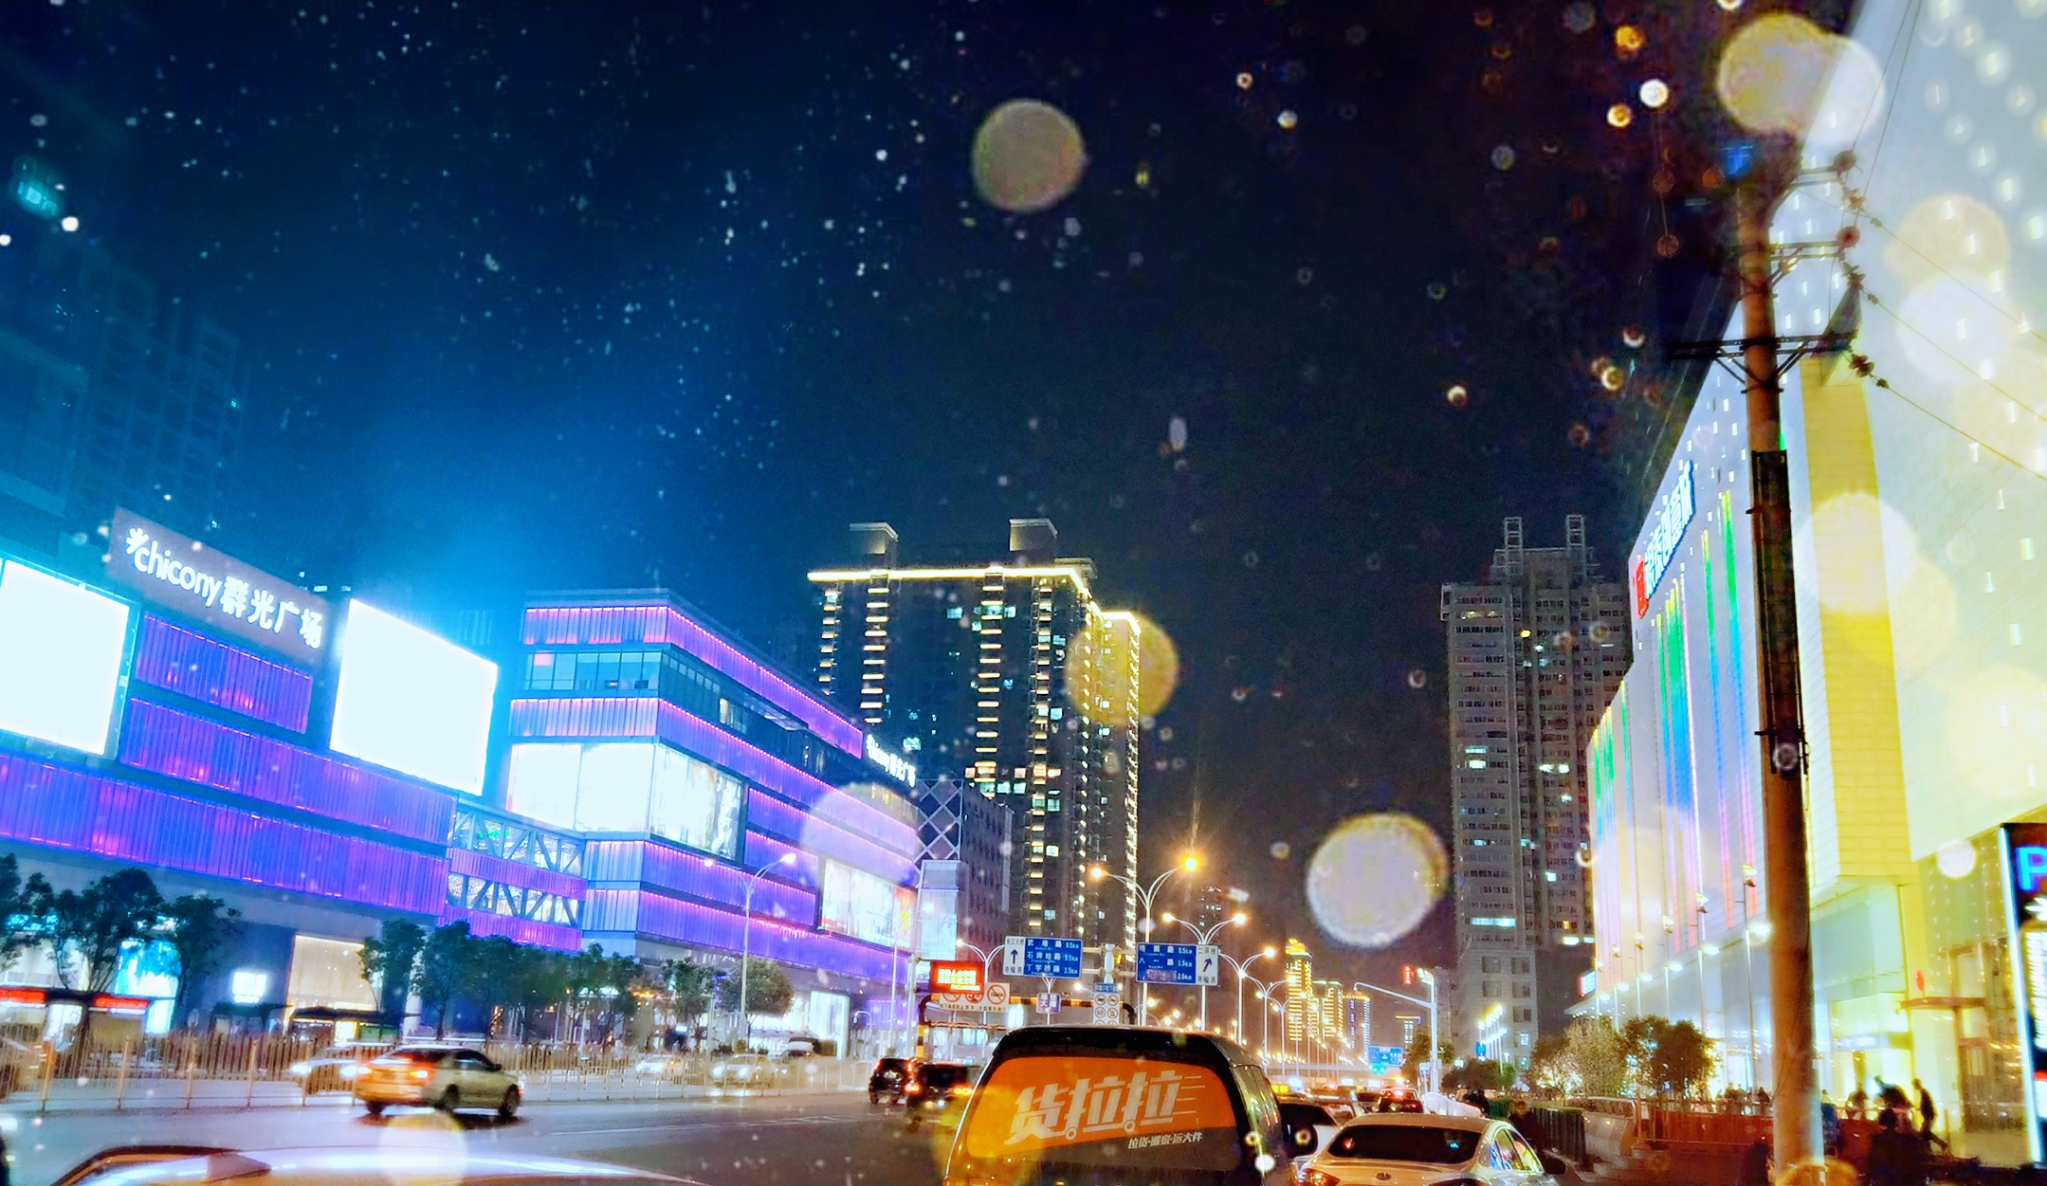 【高清图】夜景--缤纷银泰城-中关村在线摄影论坛